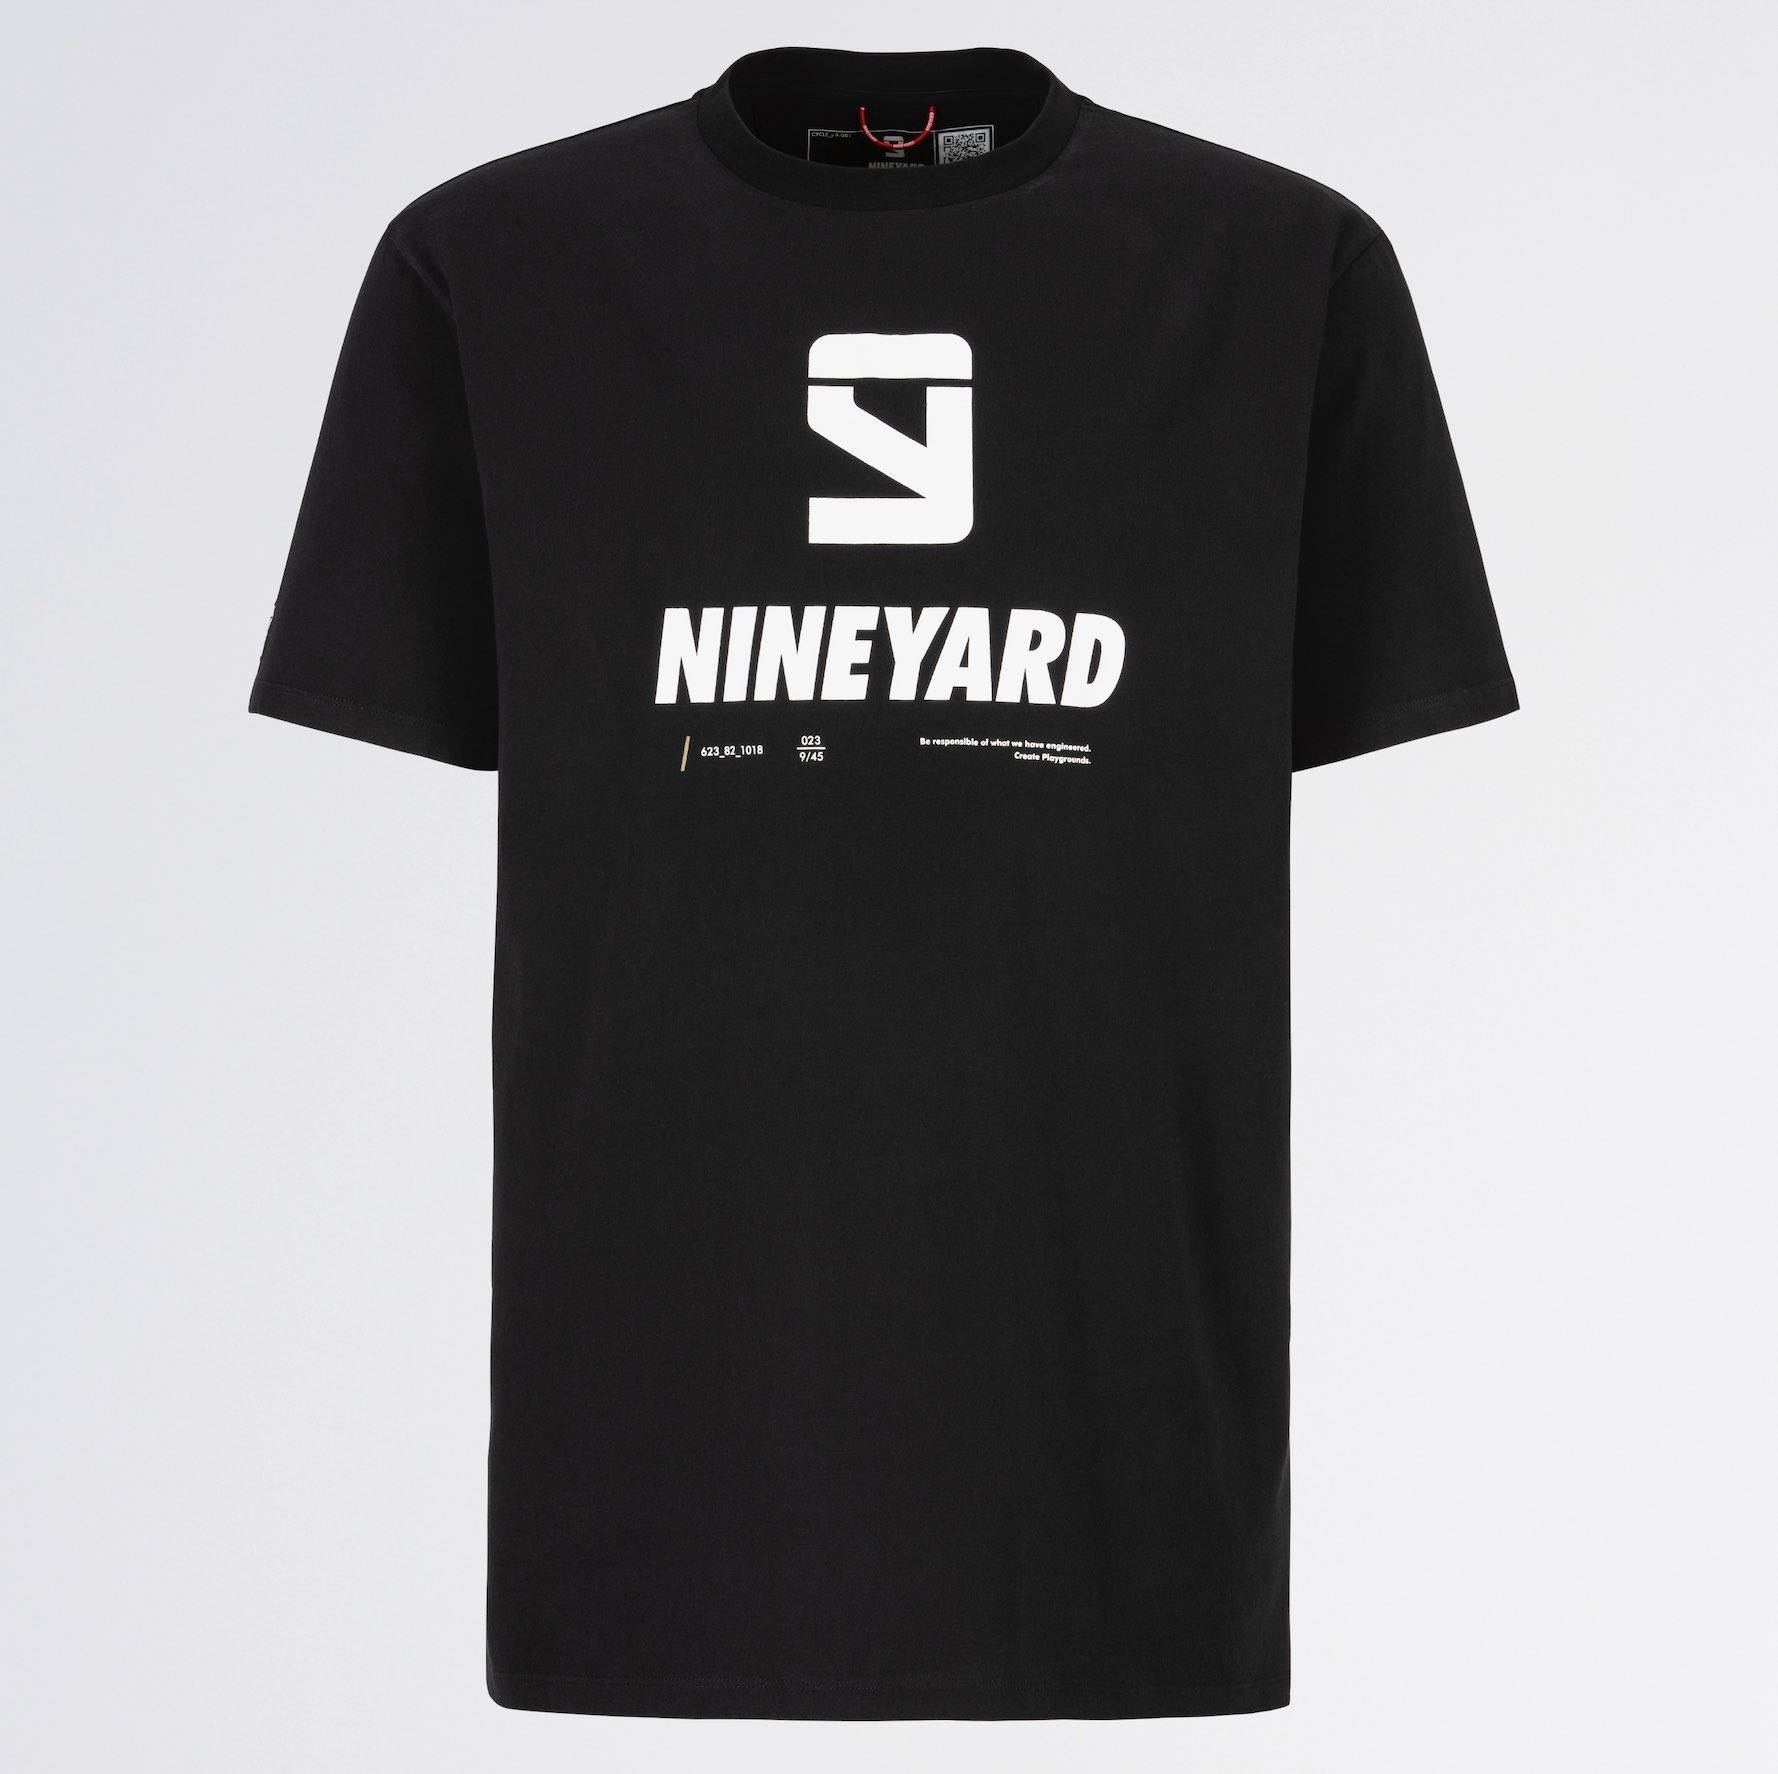 Nineyard